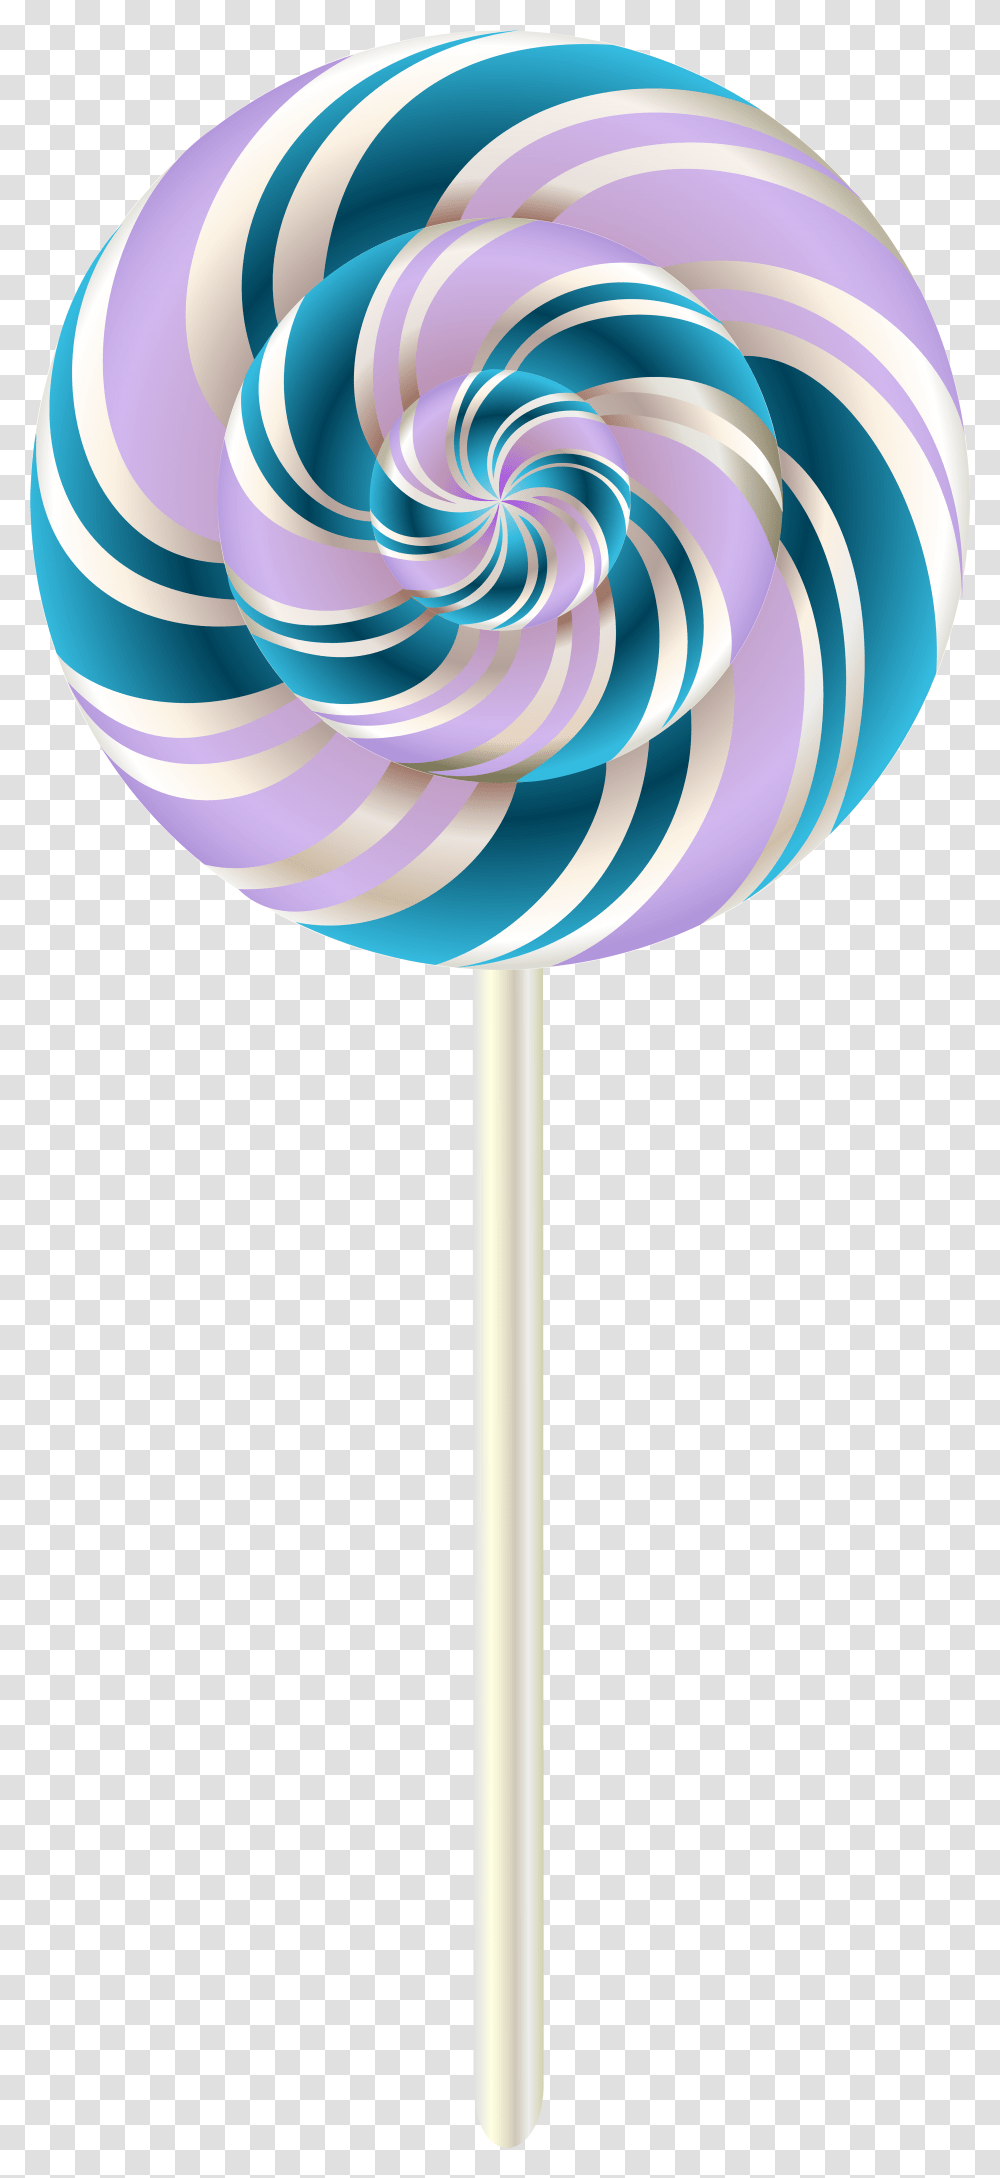 Rainbow Lollipop Download Image Lollipop, Food, Lamp, Candy Transparent Png